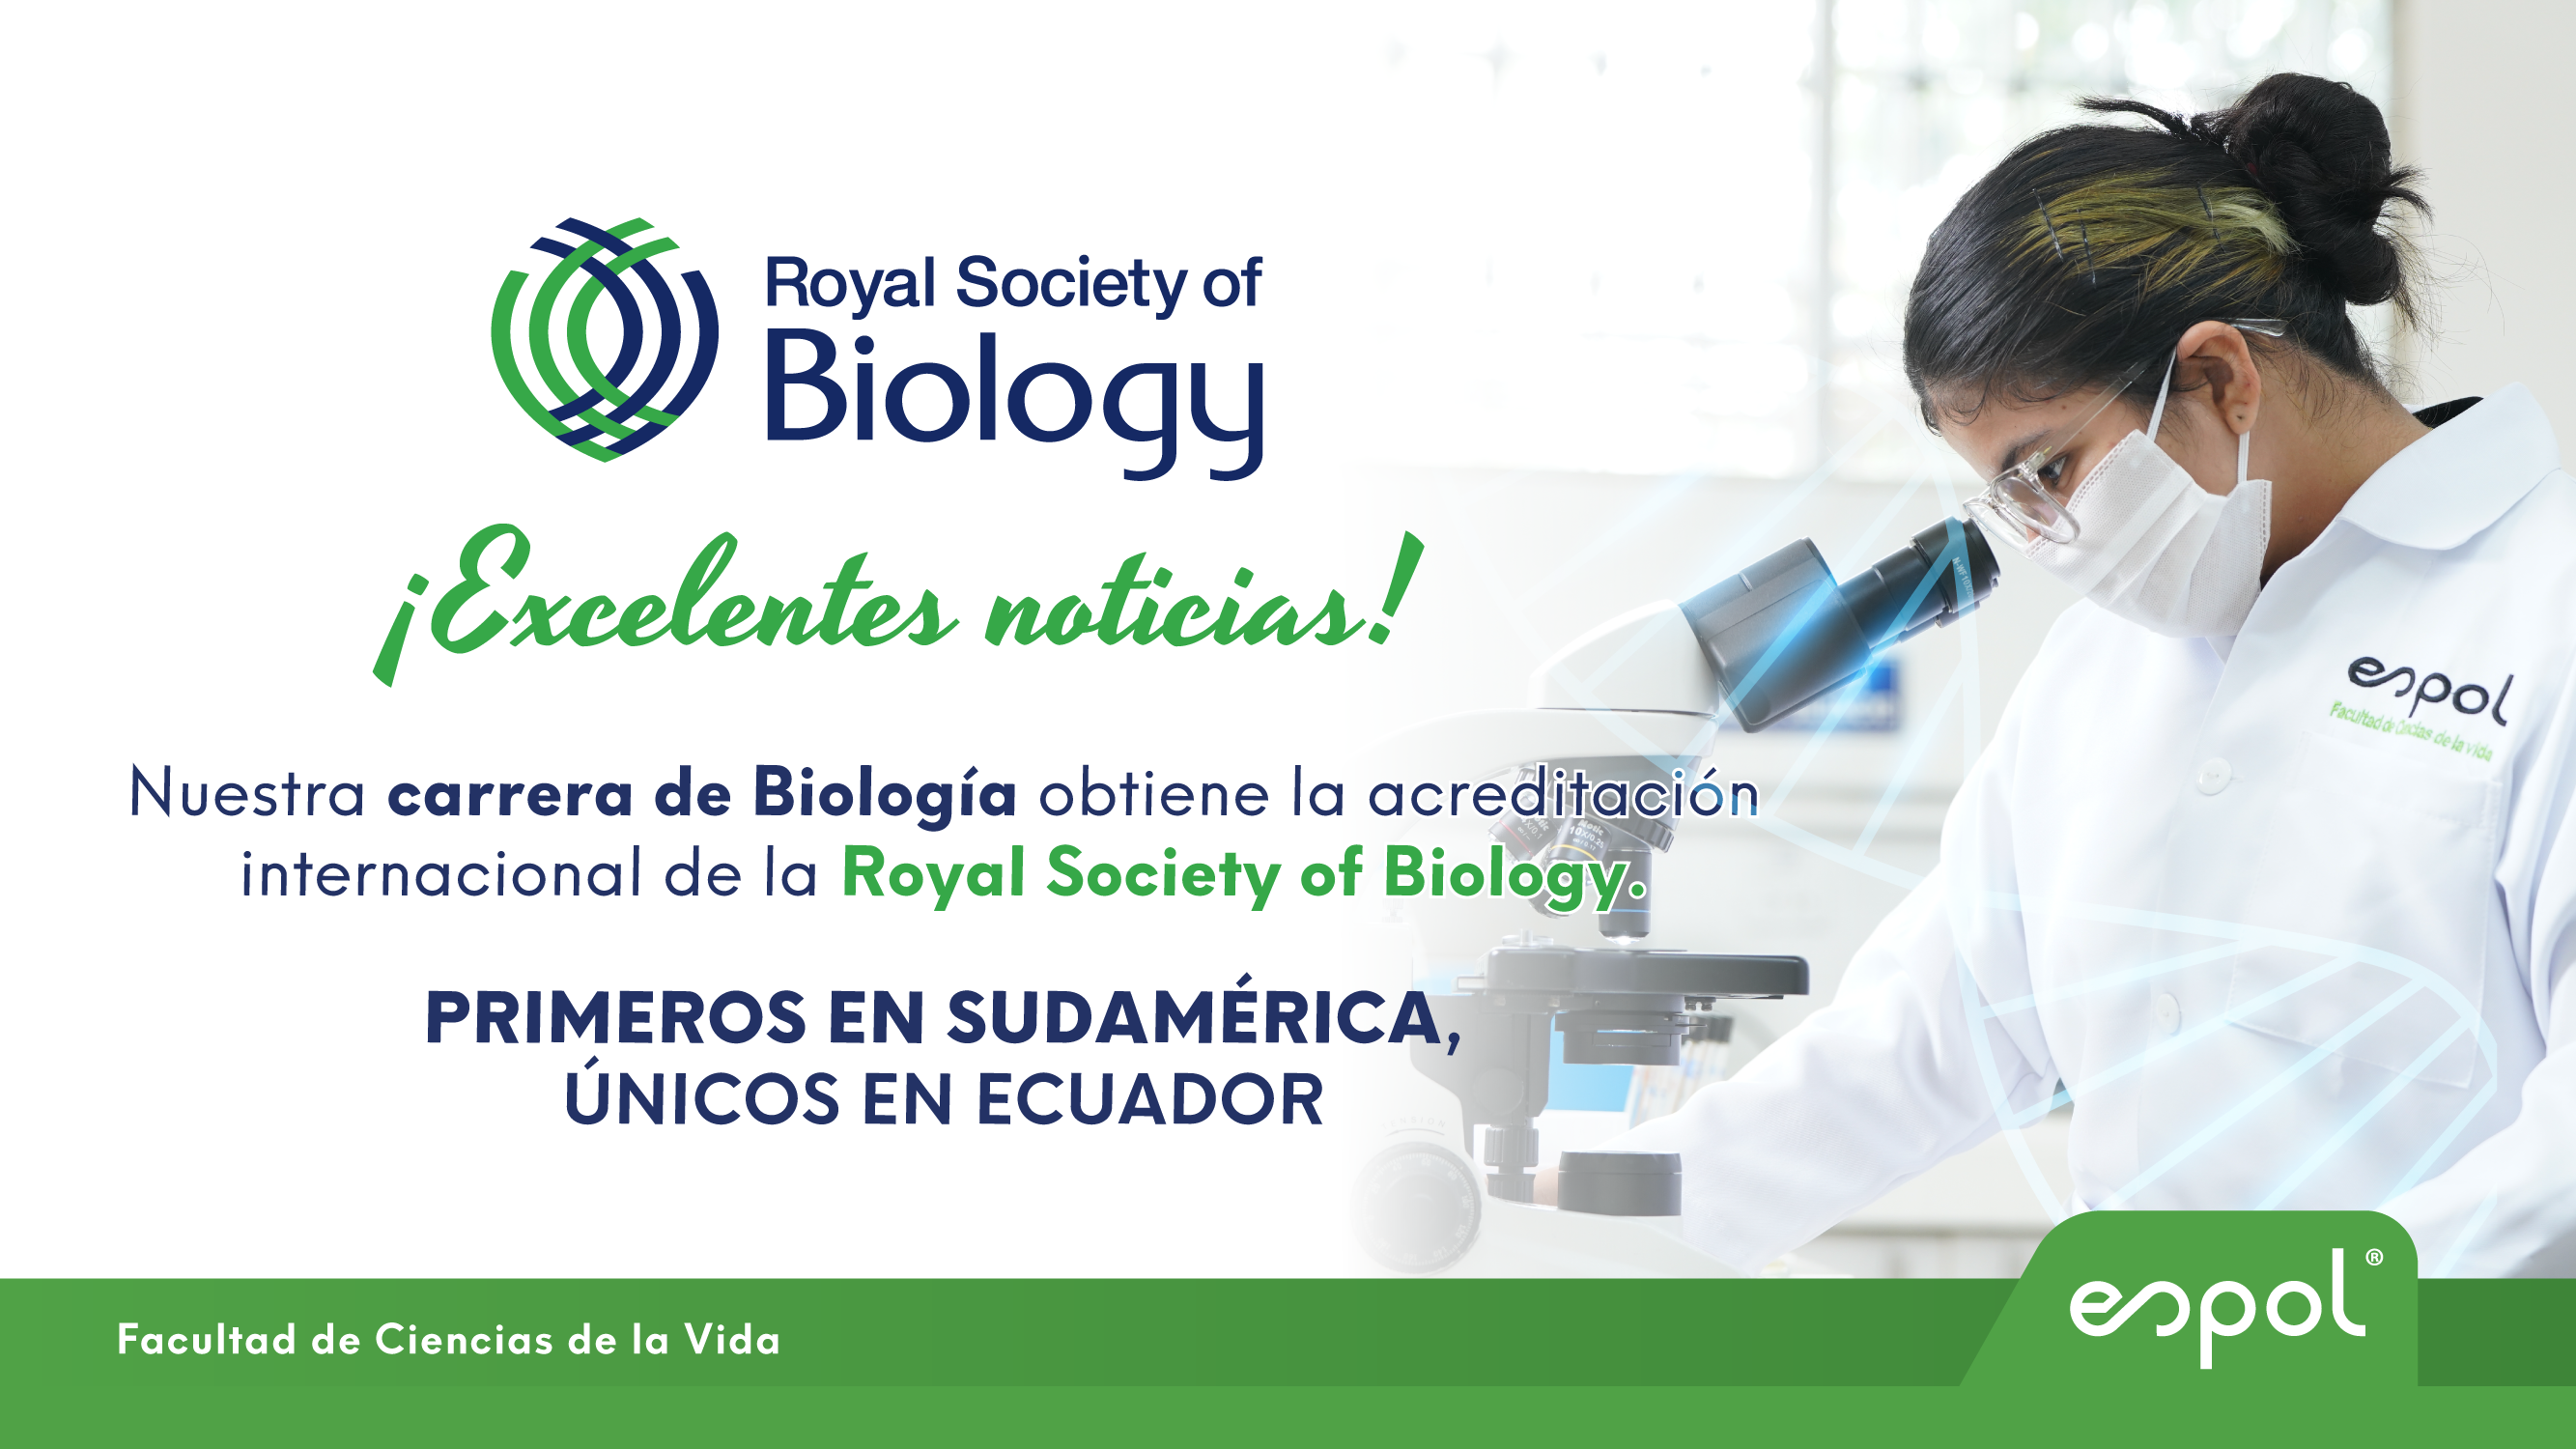 La carrera de Biología de ESPOL obtiene la acreditación de la Royal Society of Biology (RSB)